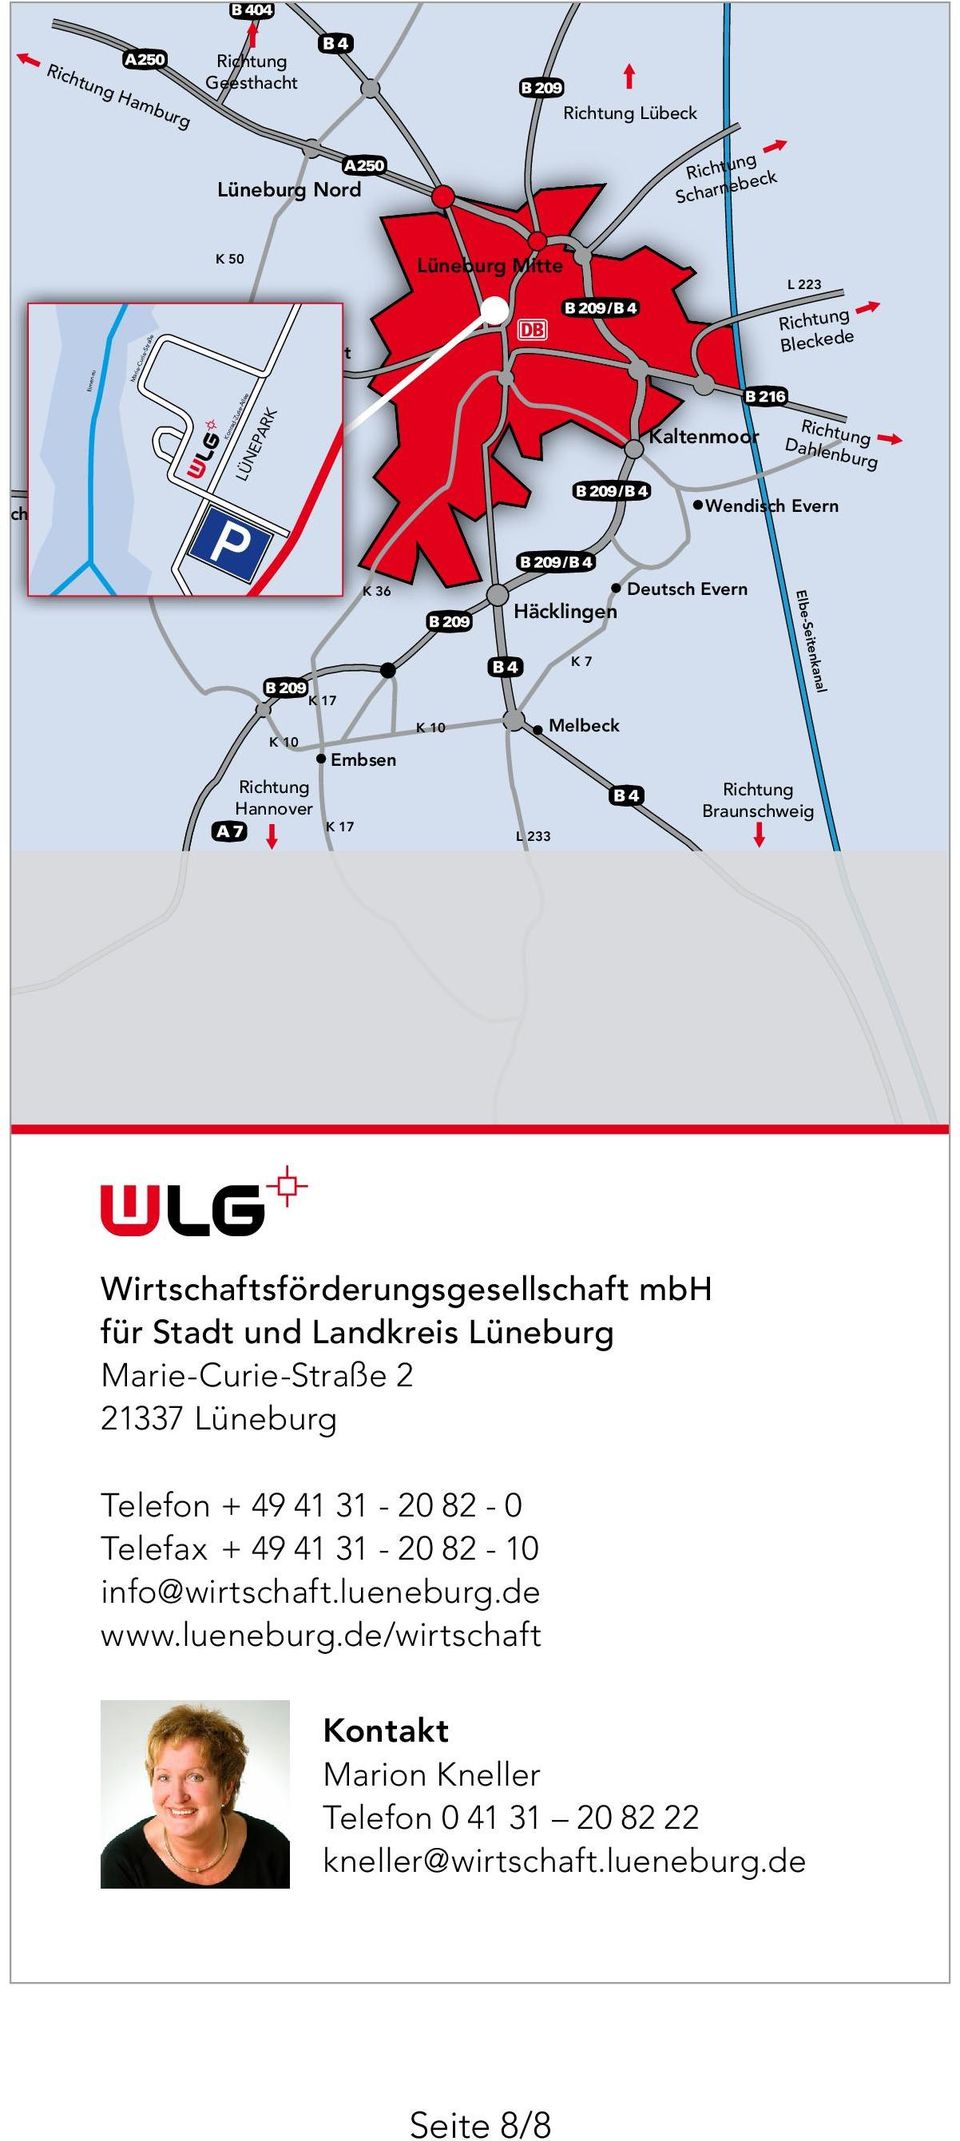 LG Rich K 17 Hannover Melbeck Embsen K 17 Braunschweig L 233 ernehmensgründungen wie die Ansiedlung von st ein Beitrag zur Sicherung t der Region Lüneburg.